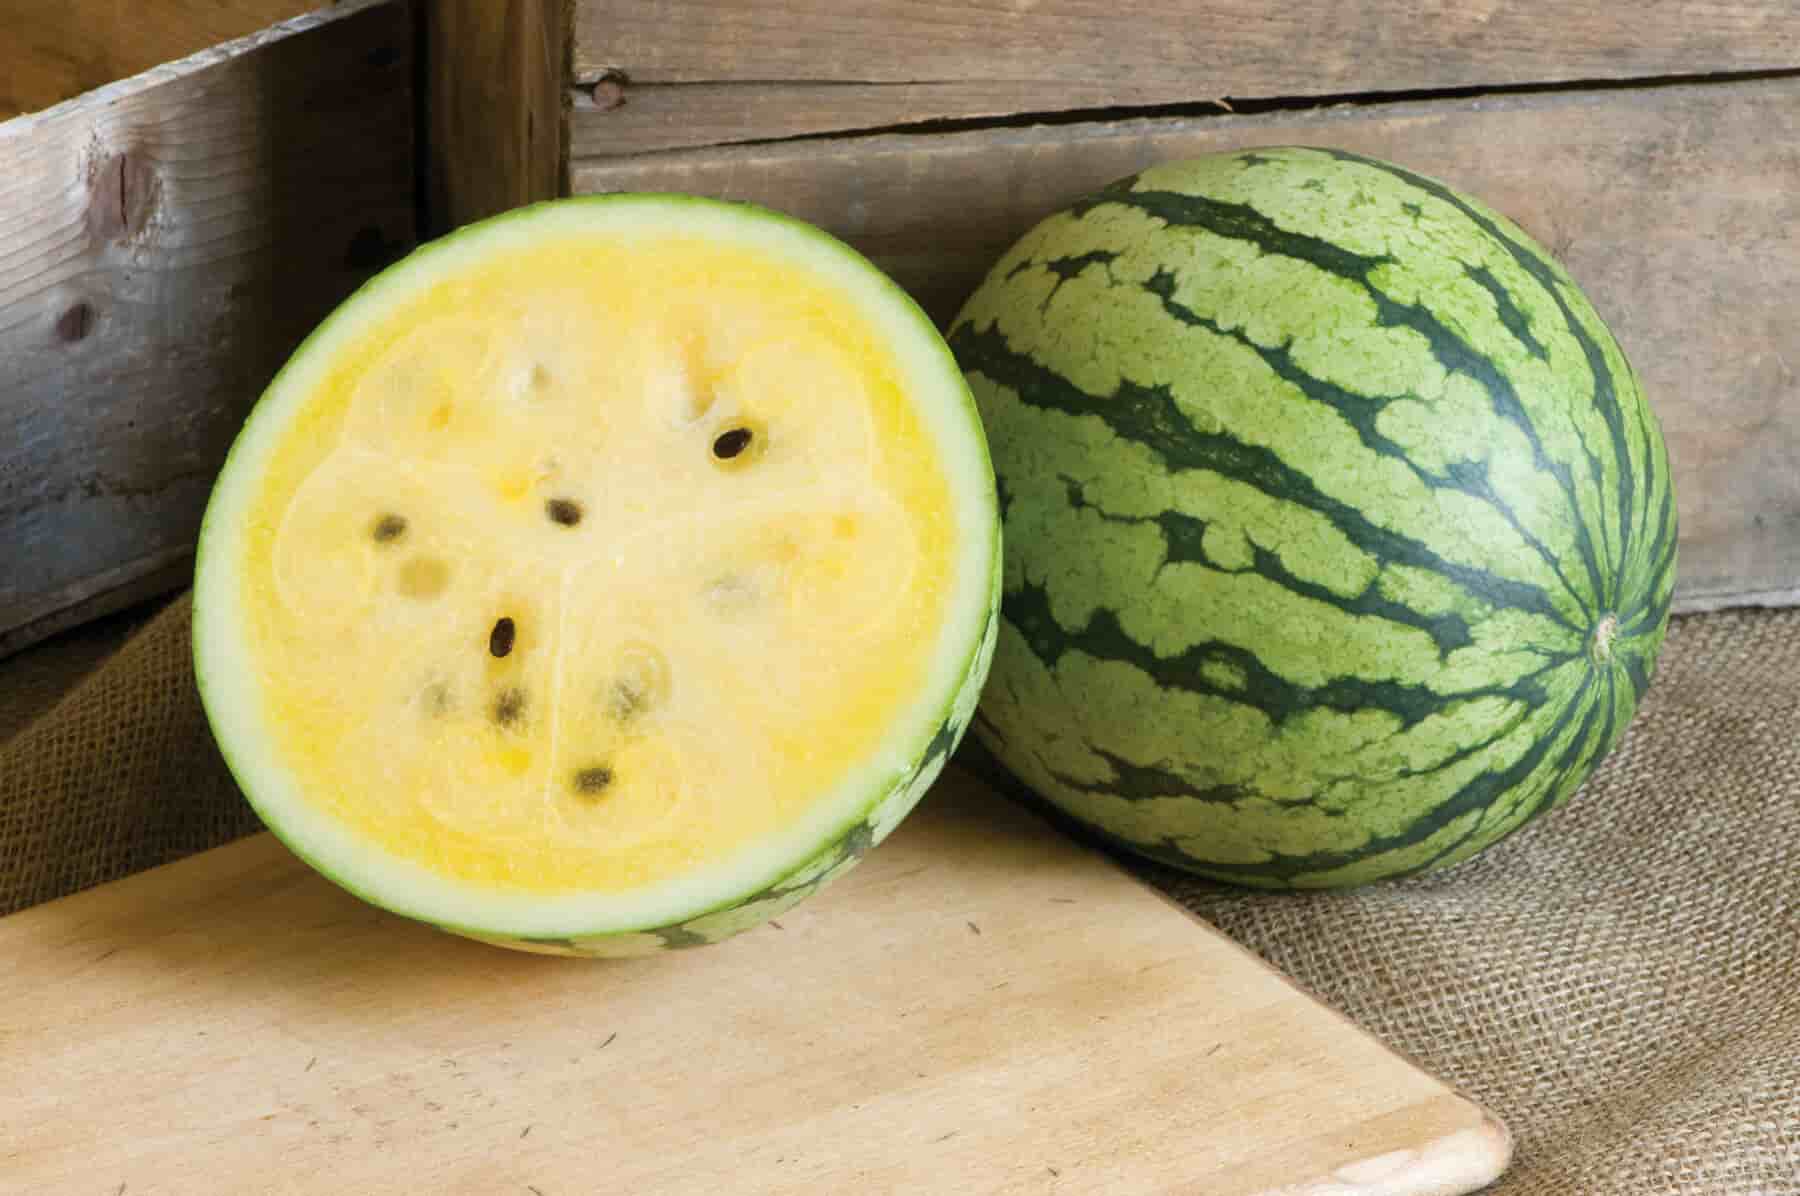 أهم فوائد فاكهة البطيخ الاصفر طعم لذيذ وفوائد عديده